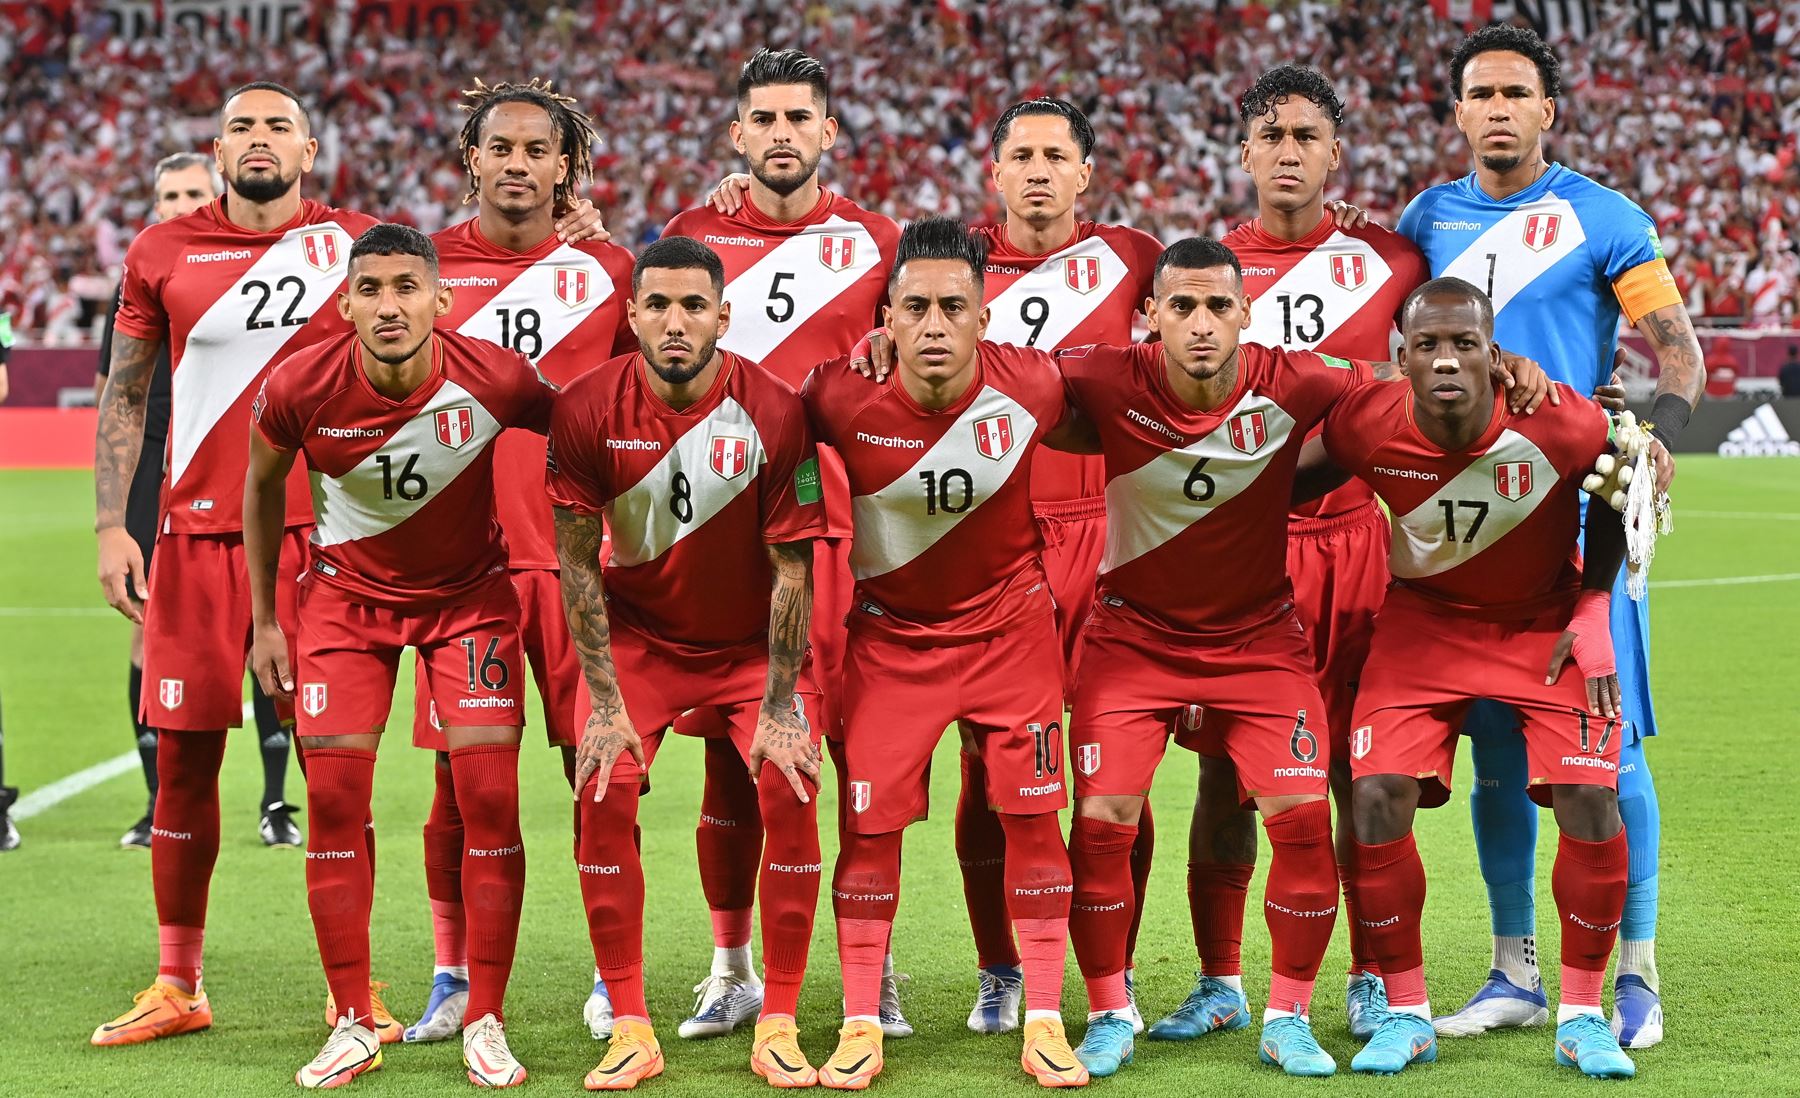 Jugadores de Perú se alinean para el partido de fútbol clasificatorio para el repechaje entre Australia y Perú en Al Rayyan, Qatar. Foto: EFE